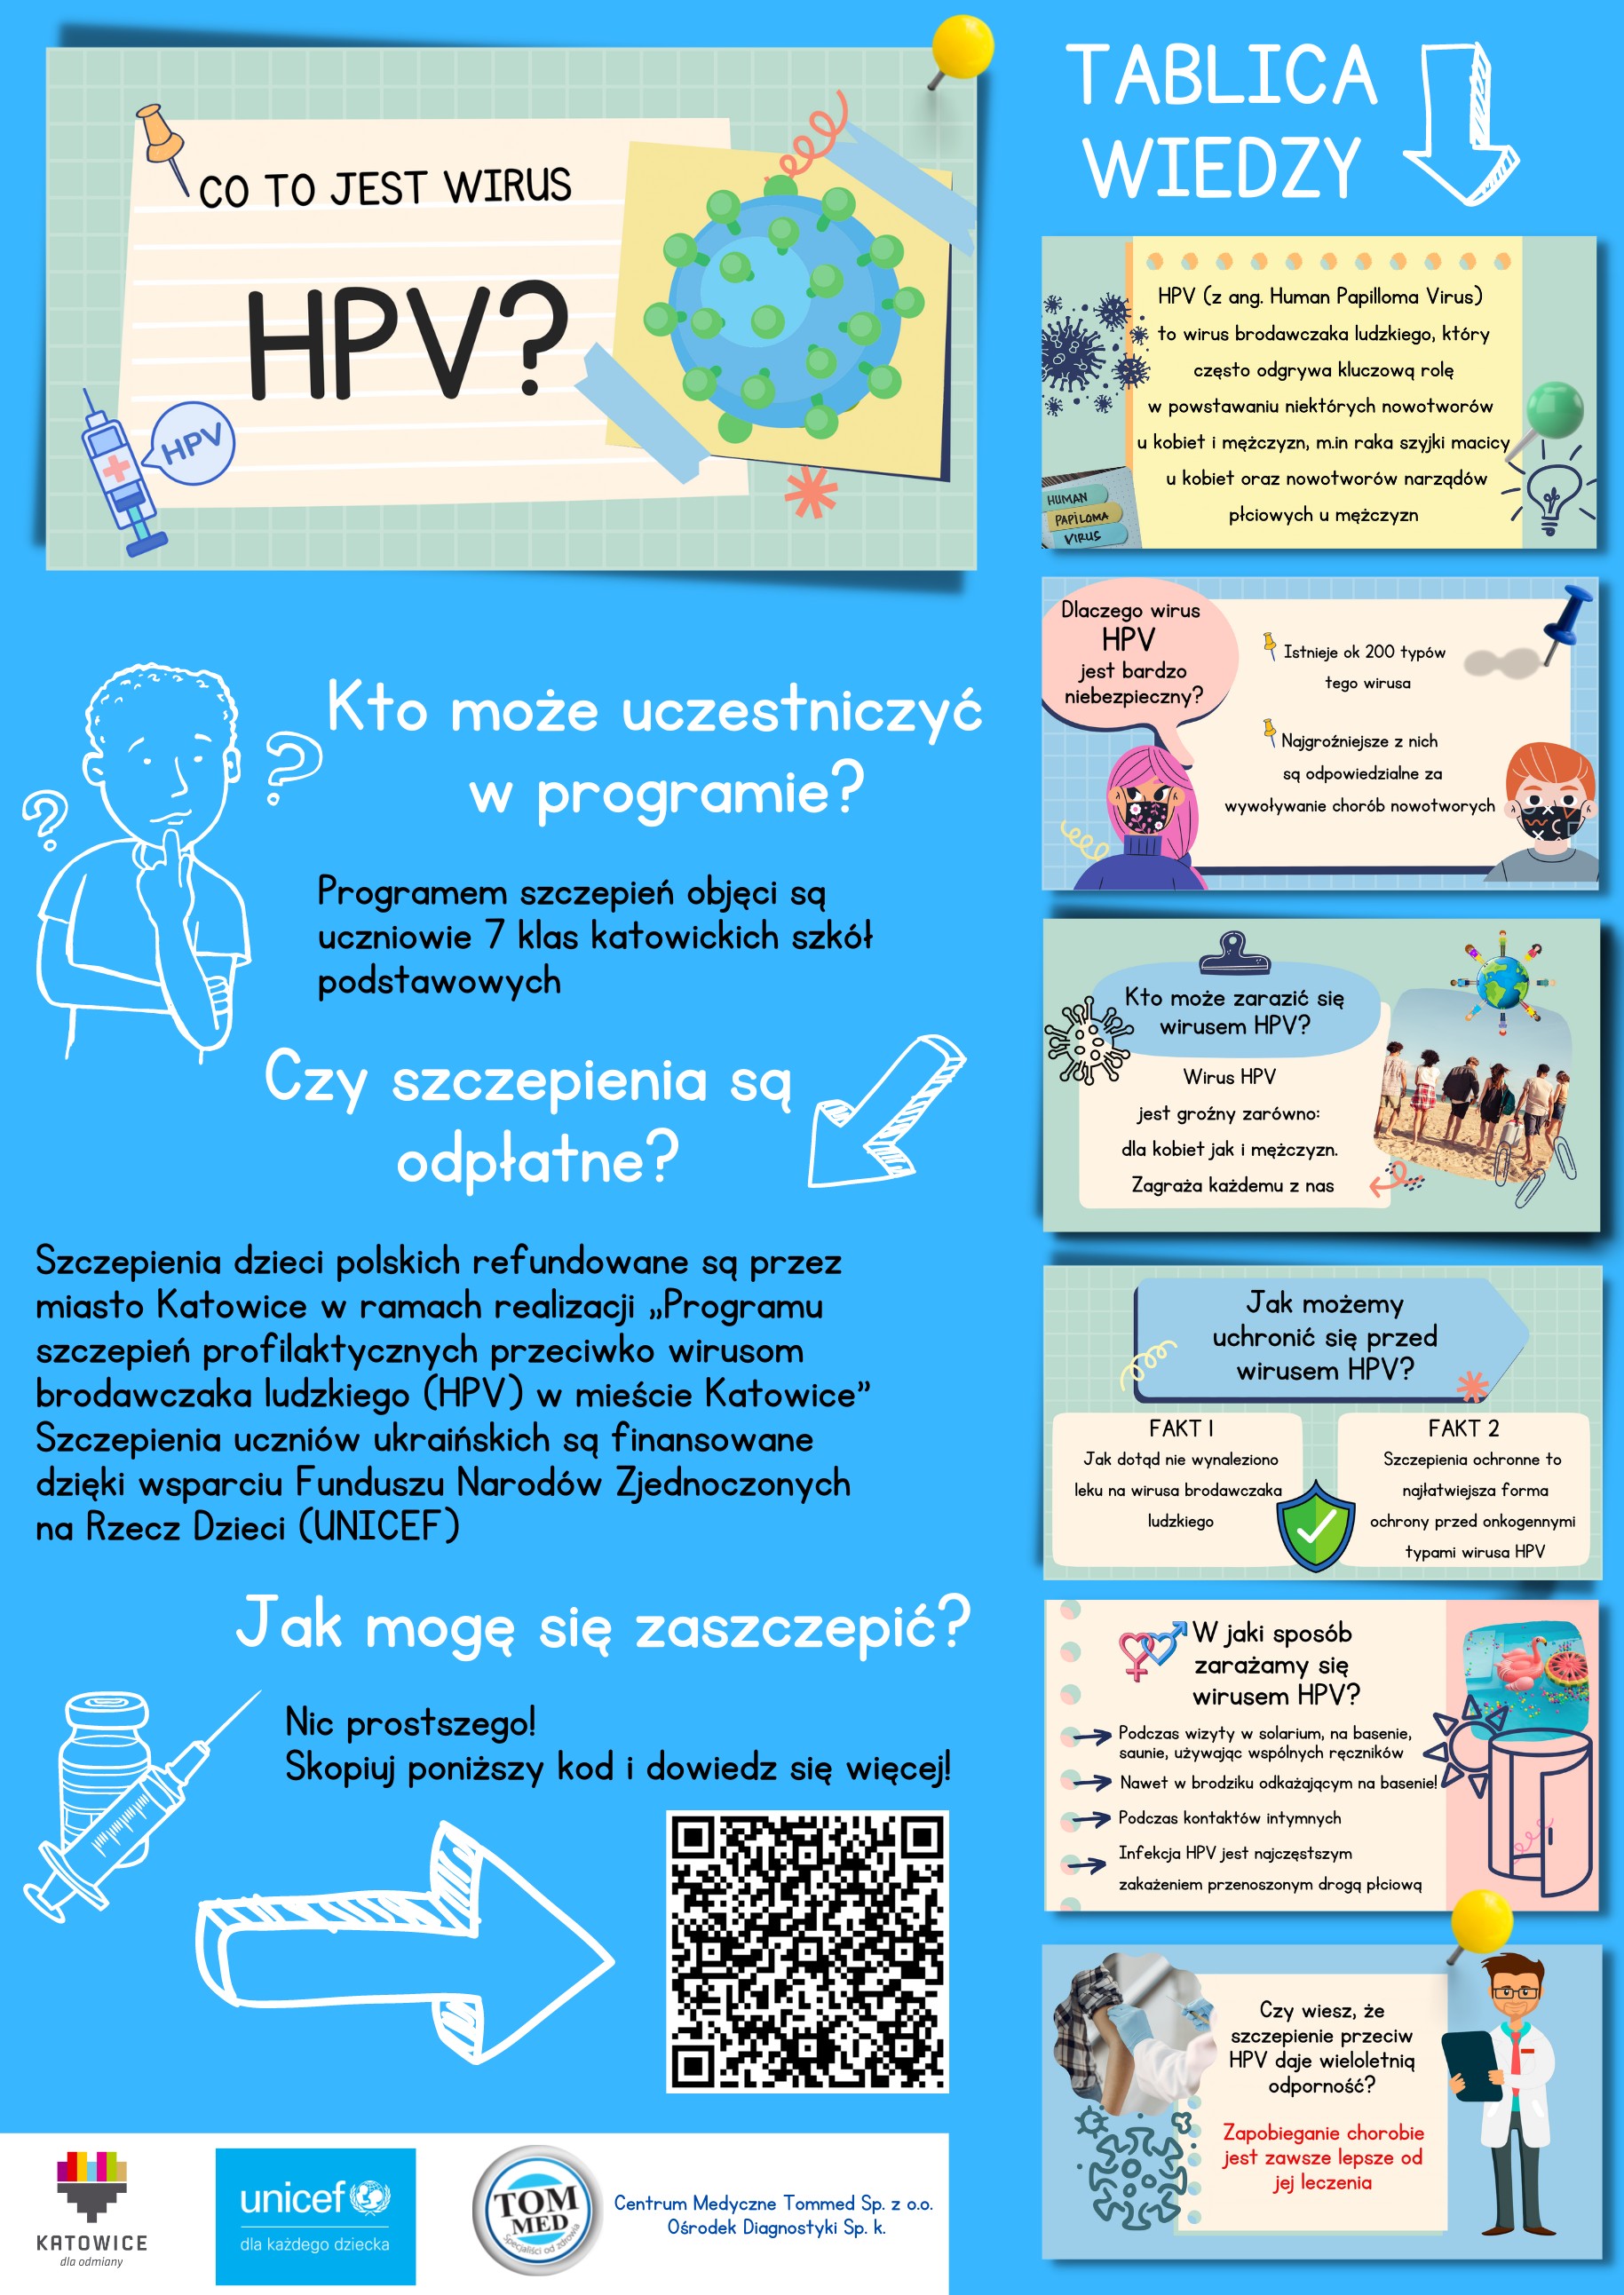 Szczepienia przeciw HPV - szczegóły poniżej